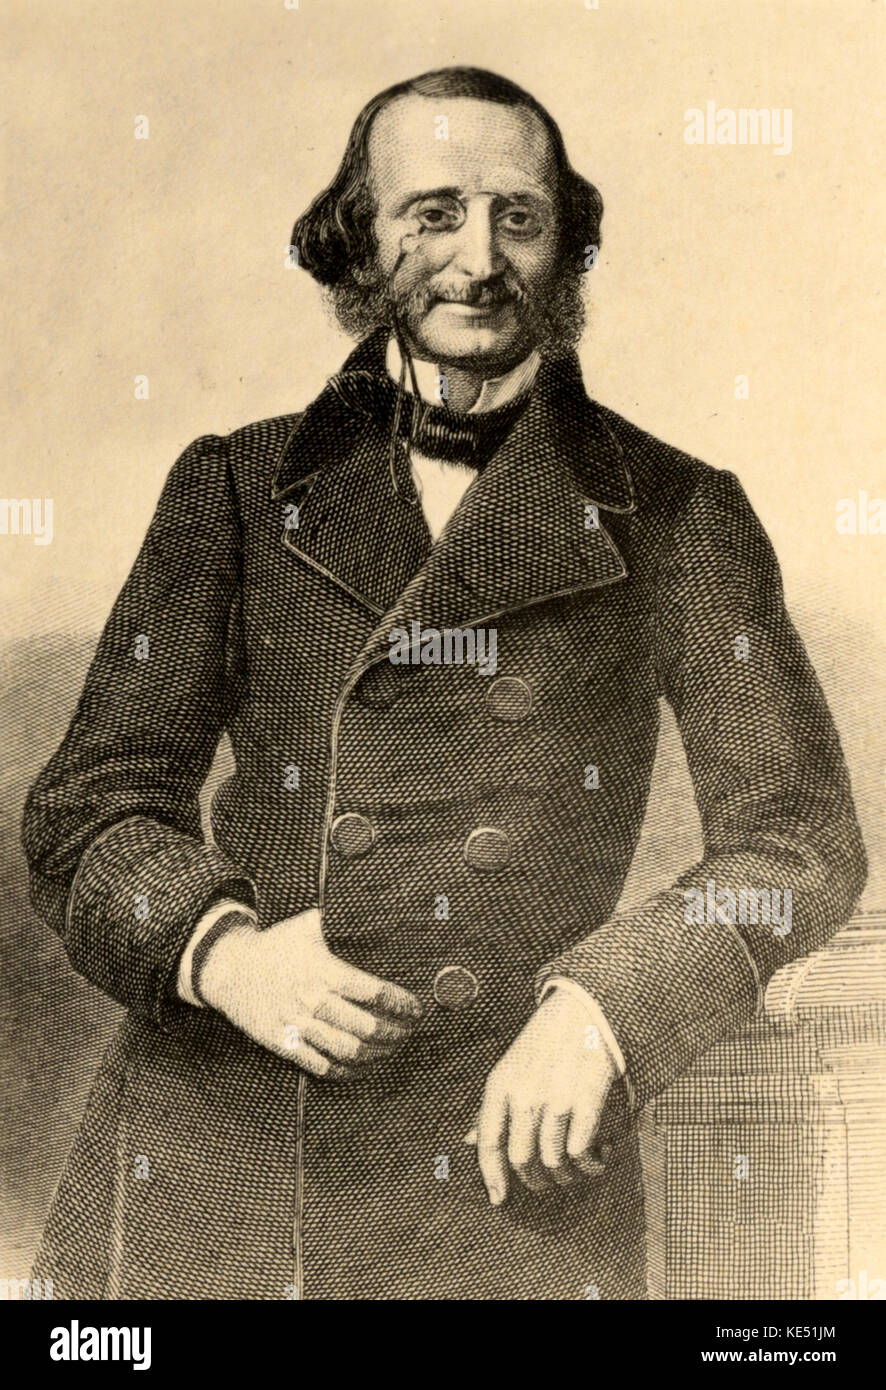 OFFENBACH, Jacques - portrait du compositeur allemand/français (1819-1880) Banque D'Images